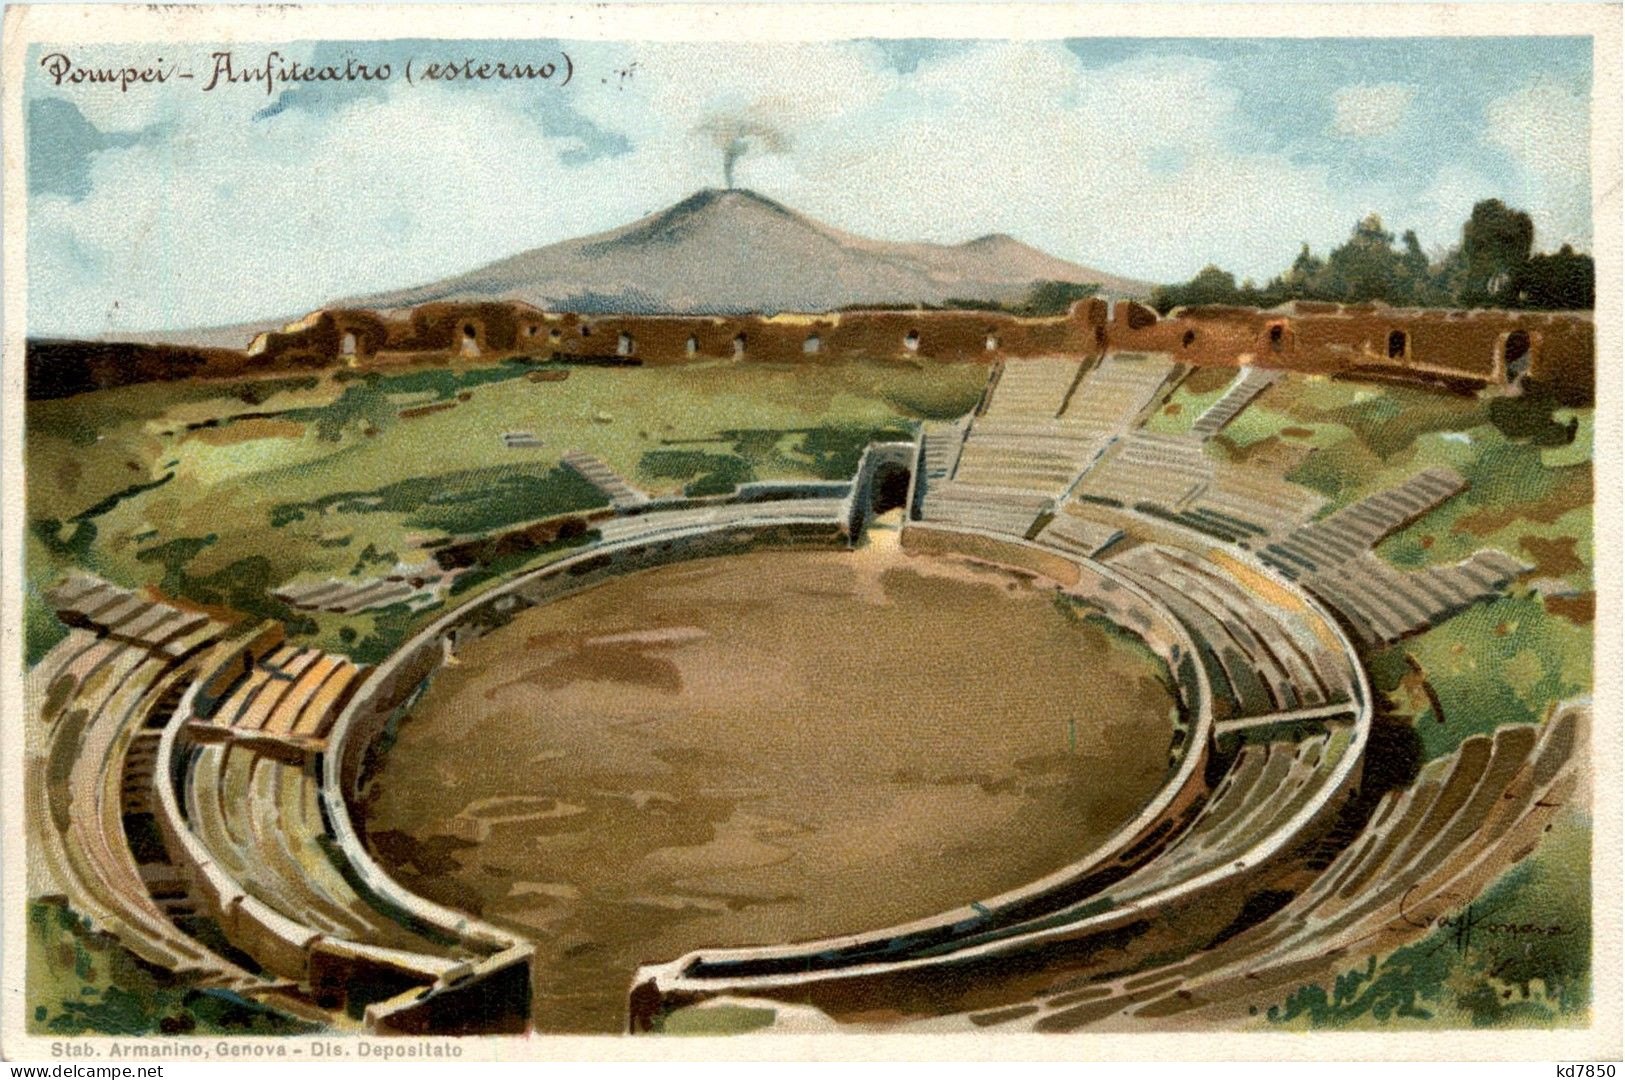 Pompei - Pompei